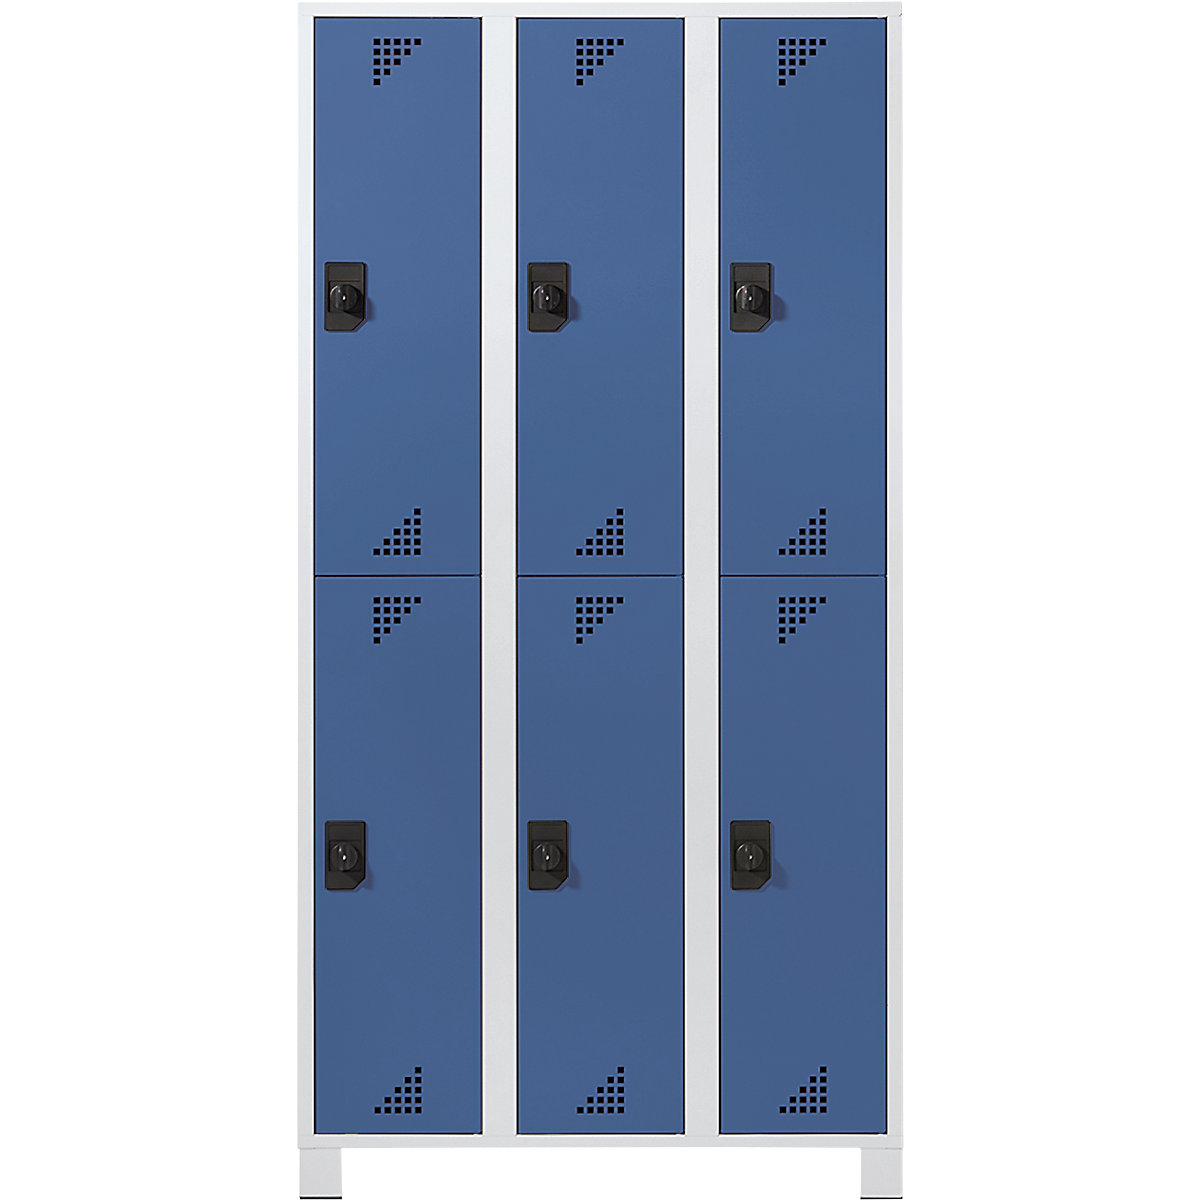 Šatní skříň s oddíly v poloviční výšce – eurokraft pro, v x š x h 1800 x 900 x 500 mm, 6 oddílů, korpus světle šedý, dveře jasně modré